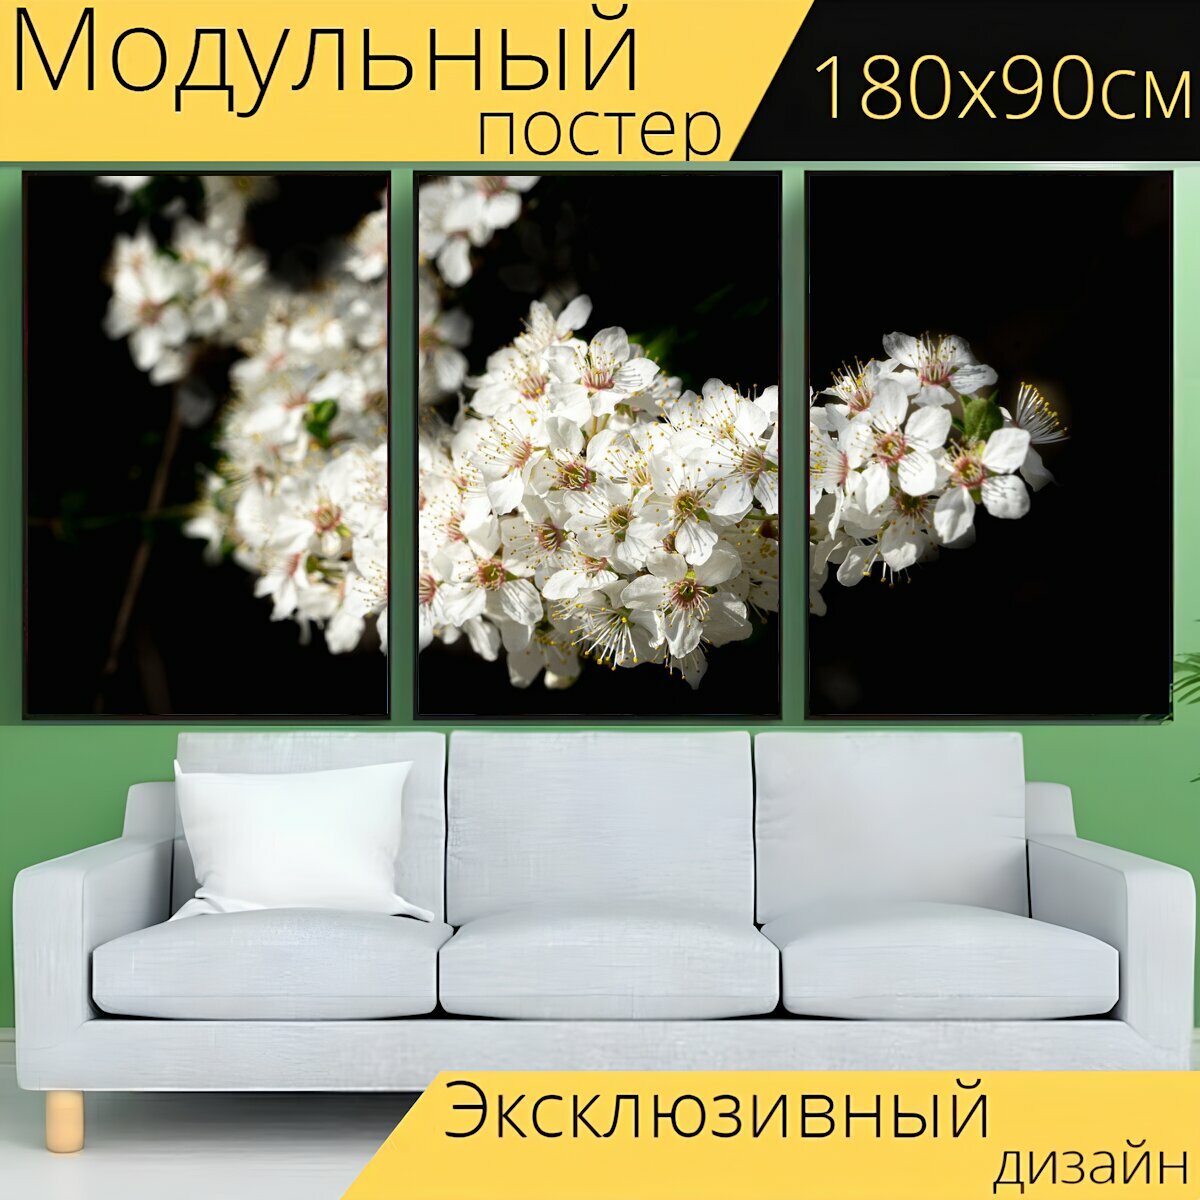 Модульный постер "Белый, цветы, блум" 180 x 90 см. для интерьера